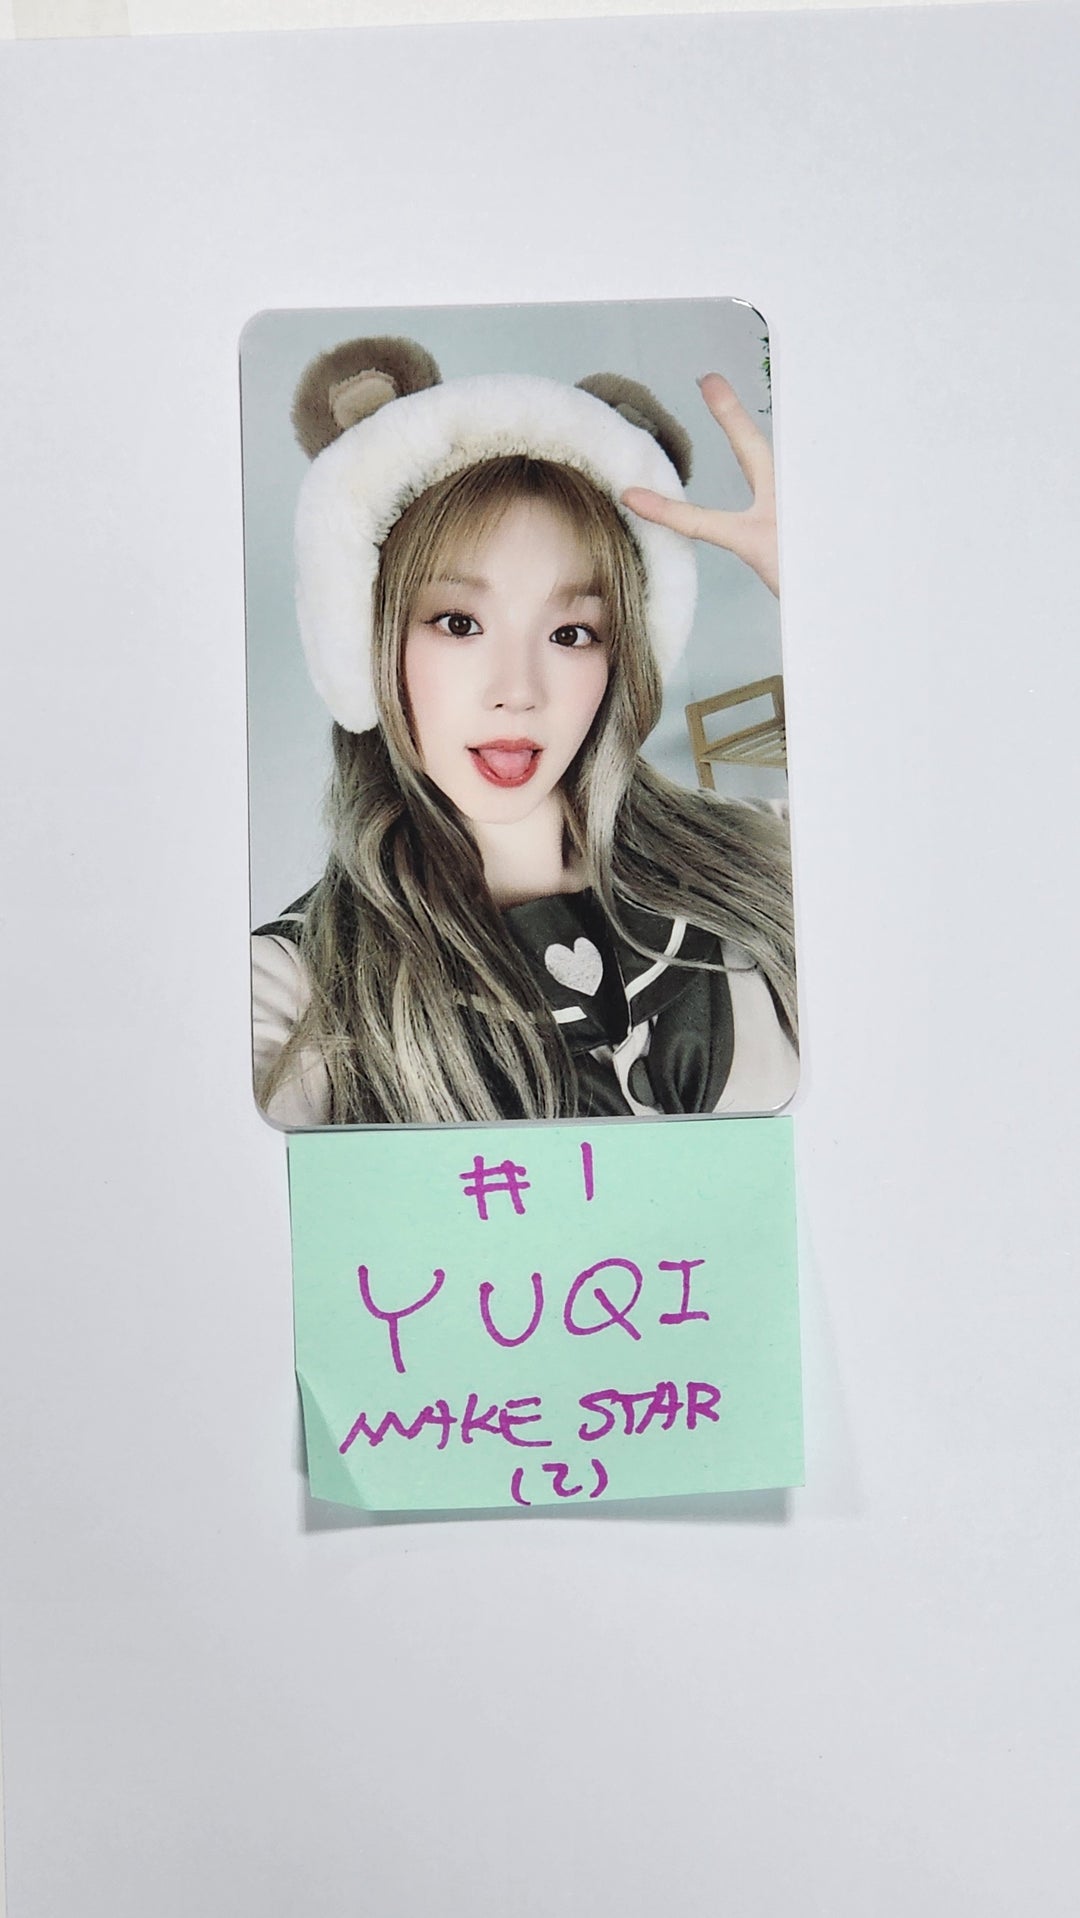 YUQI "YUQ1" - Makestar Fansign Event Photocard [24.5.2]